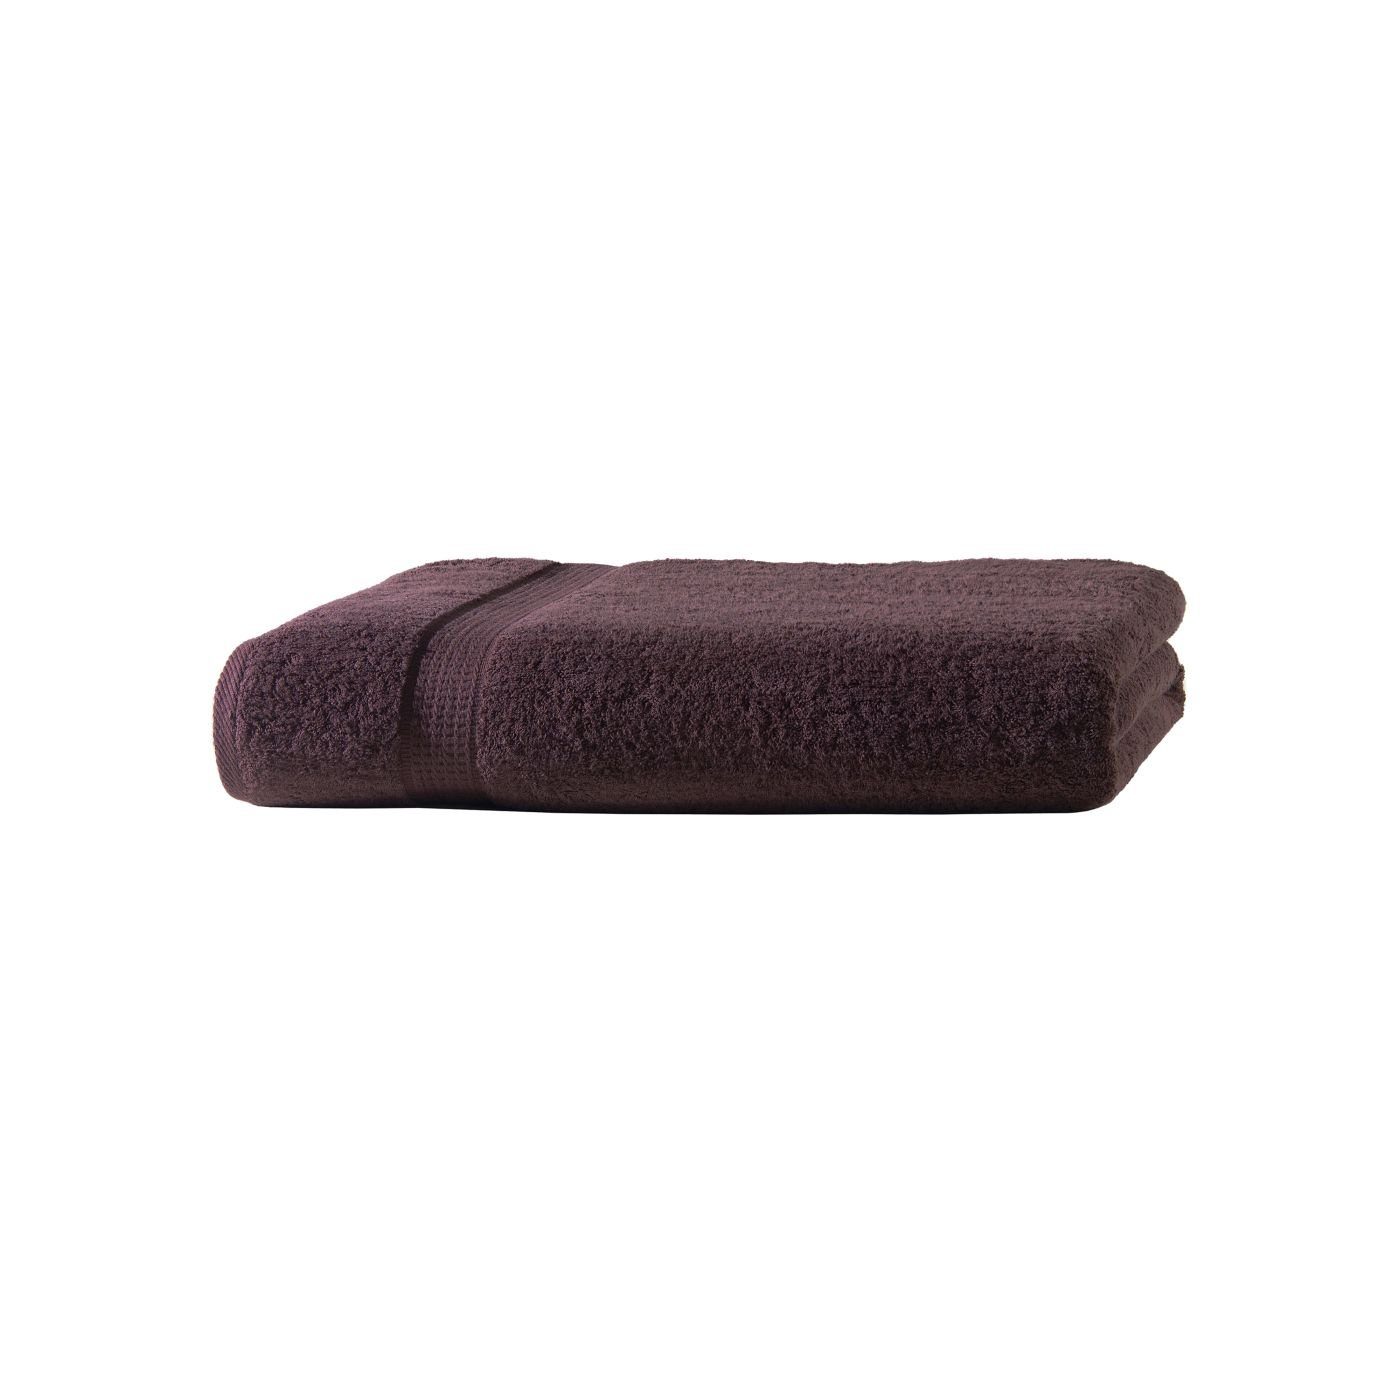 Frotteeware Baumwolle Bordüre Handtuch Baumwolle, mit 100% Uni soma Handtücher Handtuchset, (1-St)